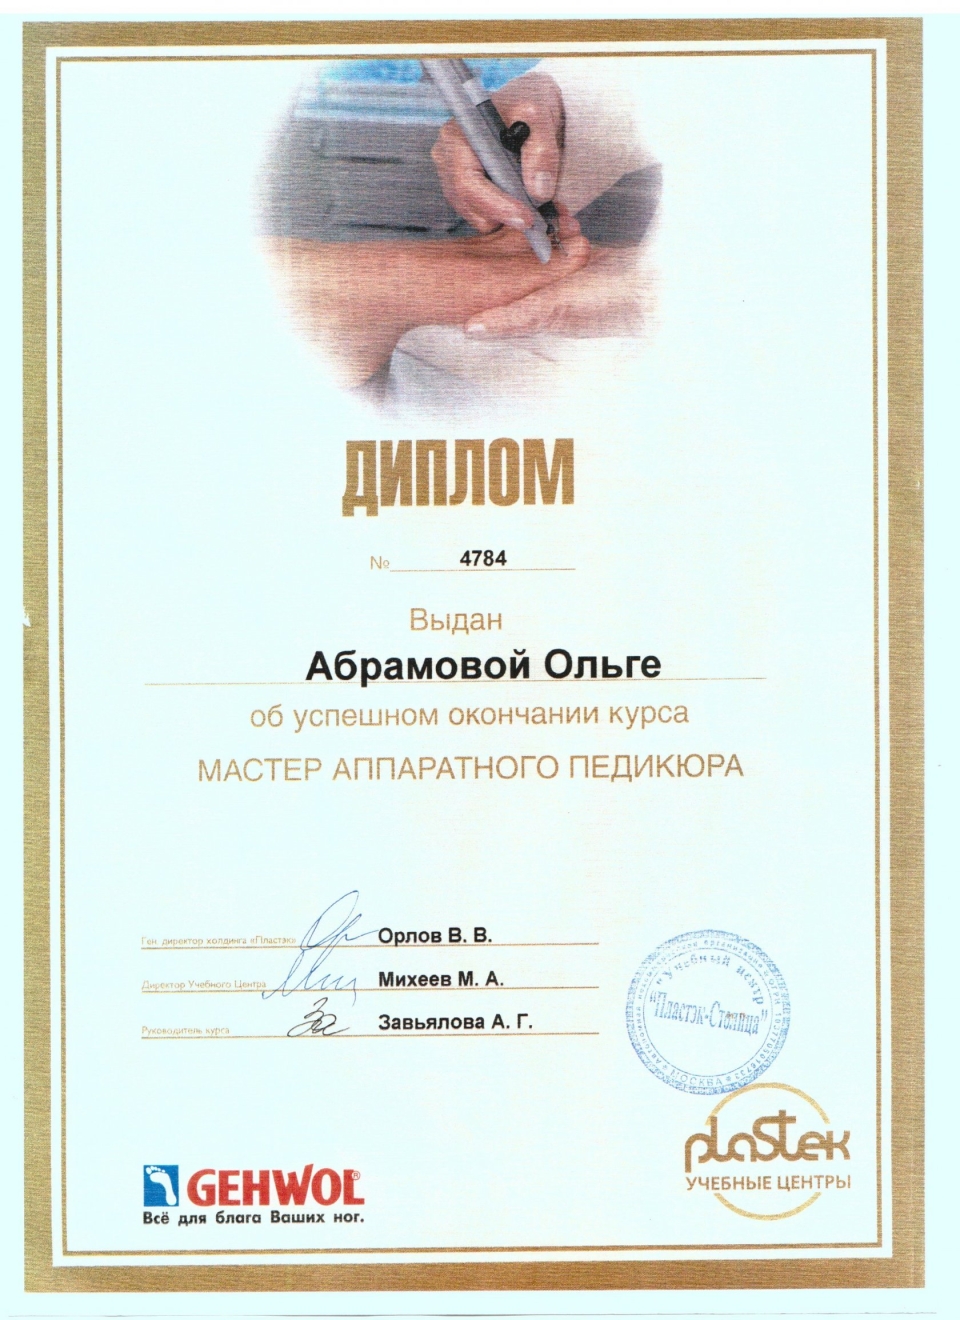 Сертификат по моделированию ногтей